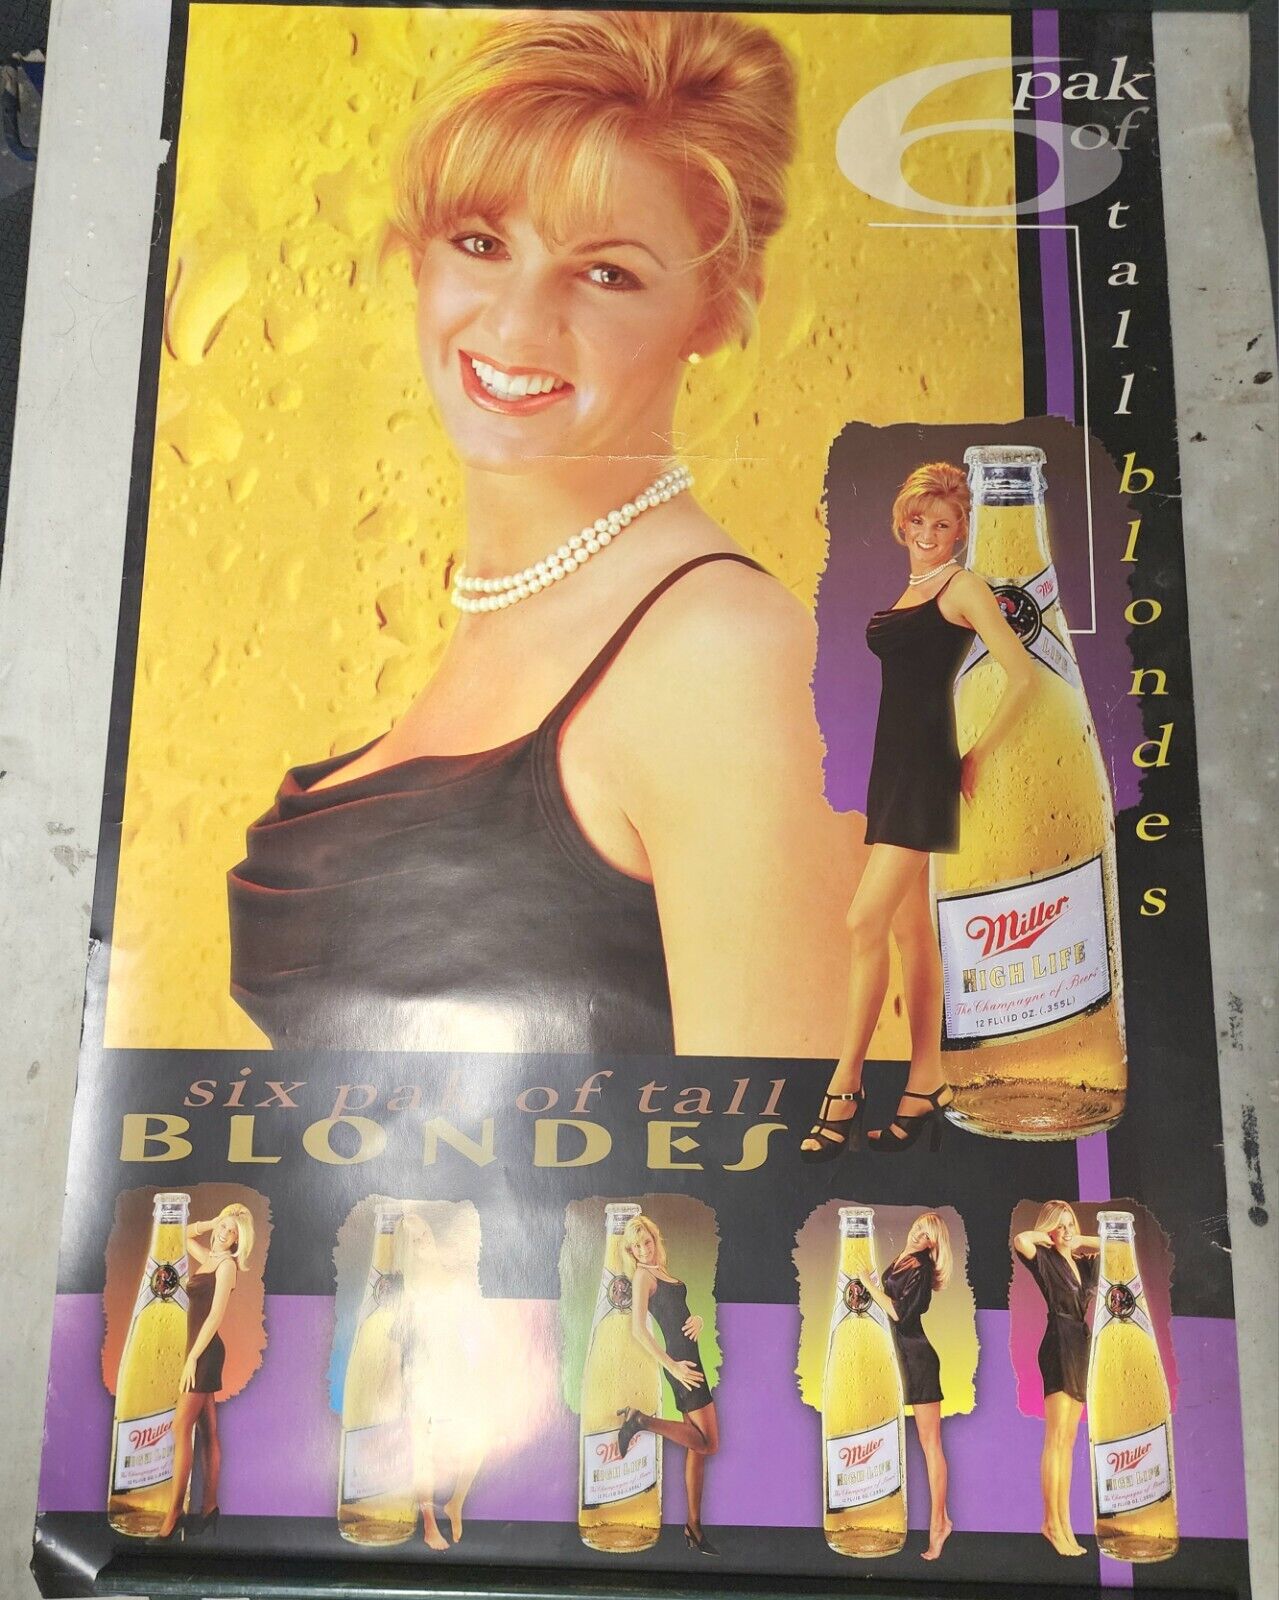 Vintage Miller Lite Poster 6 Pack Of Tall Blondes